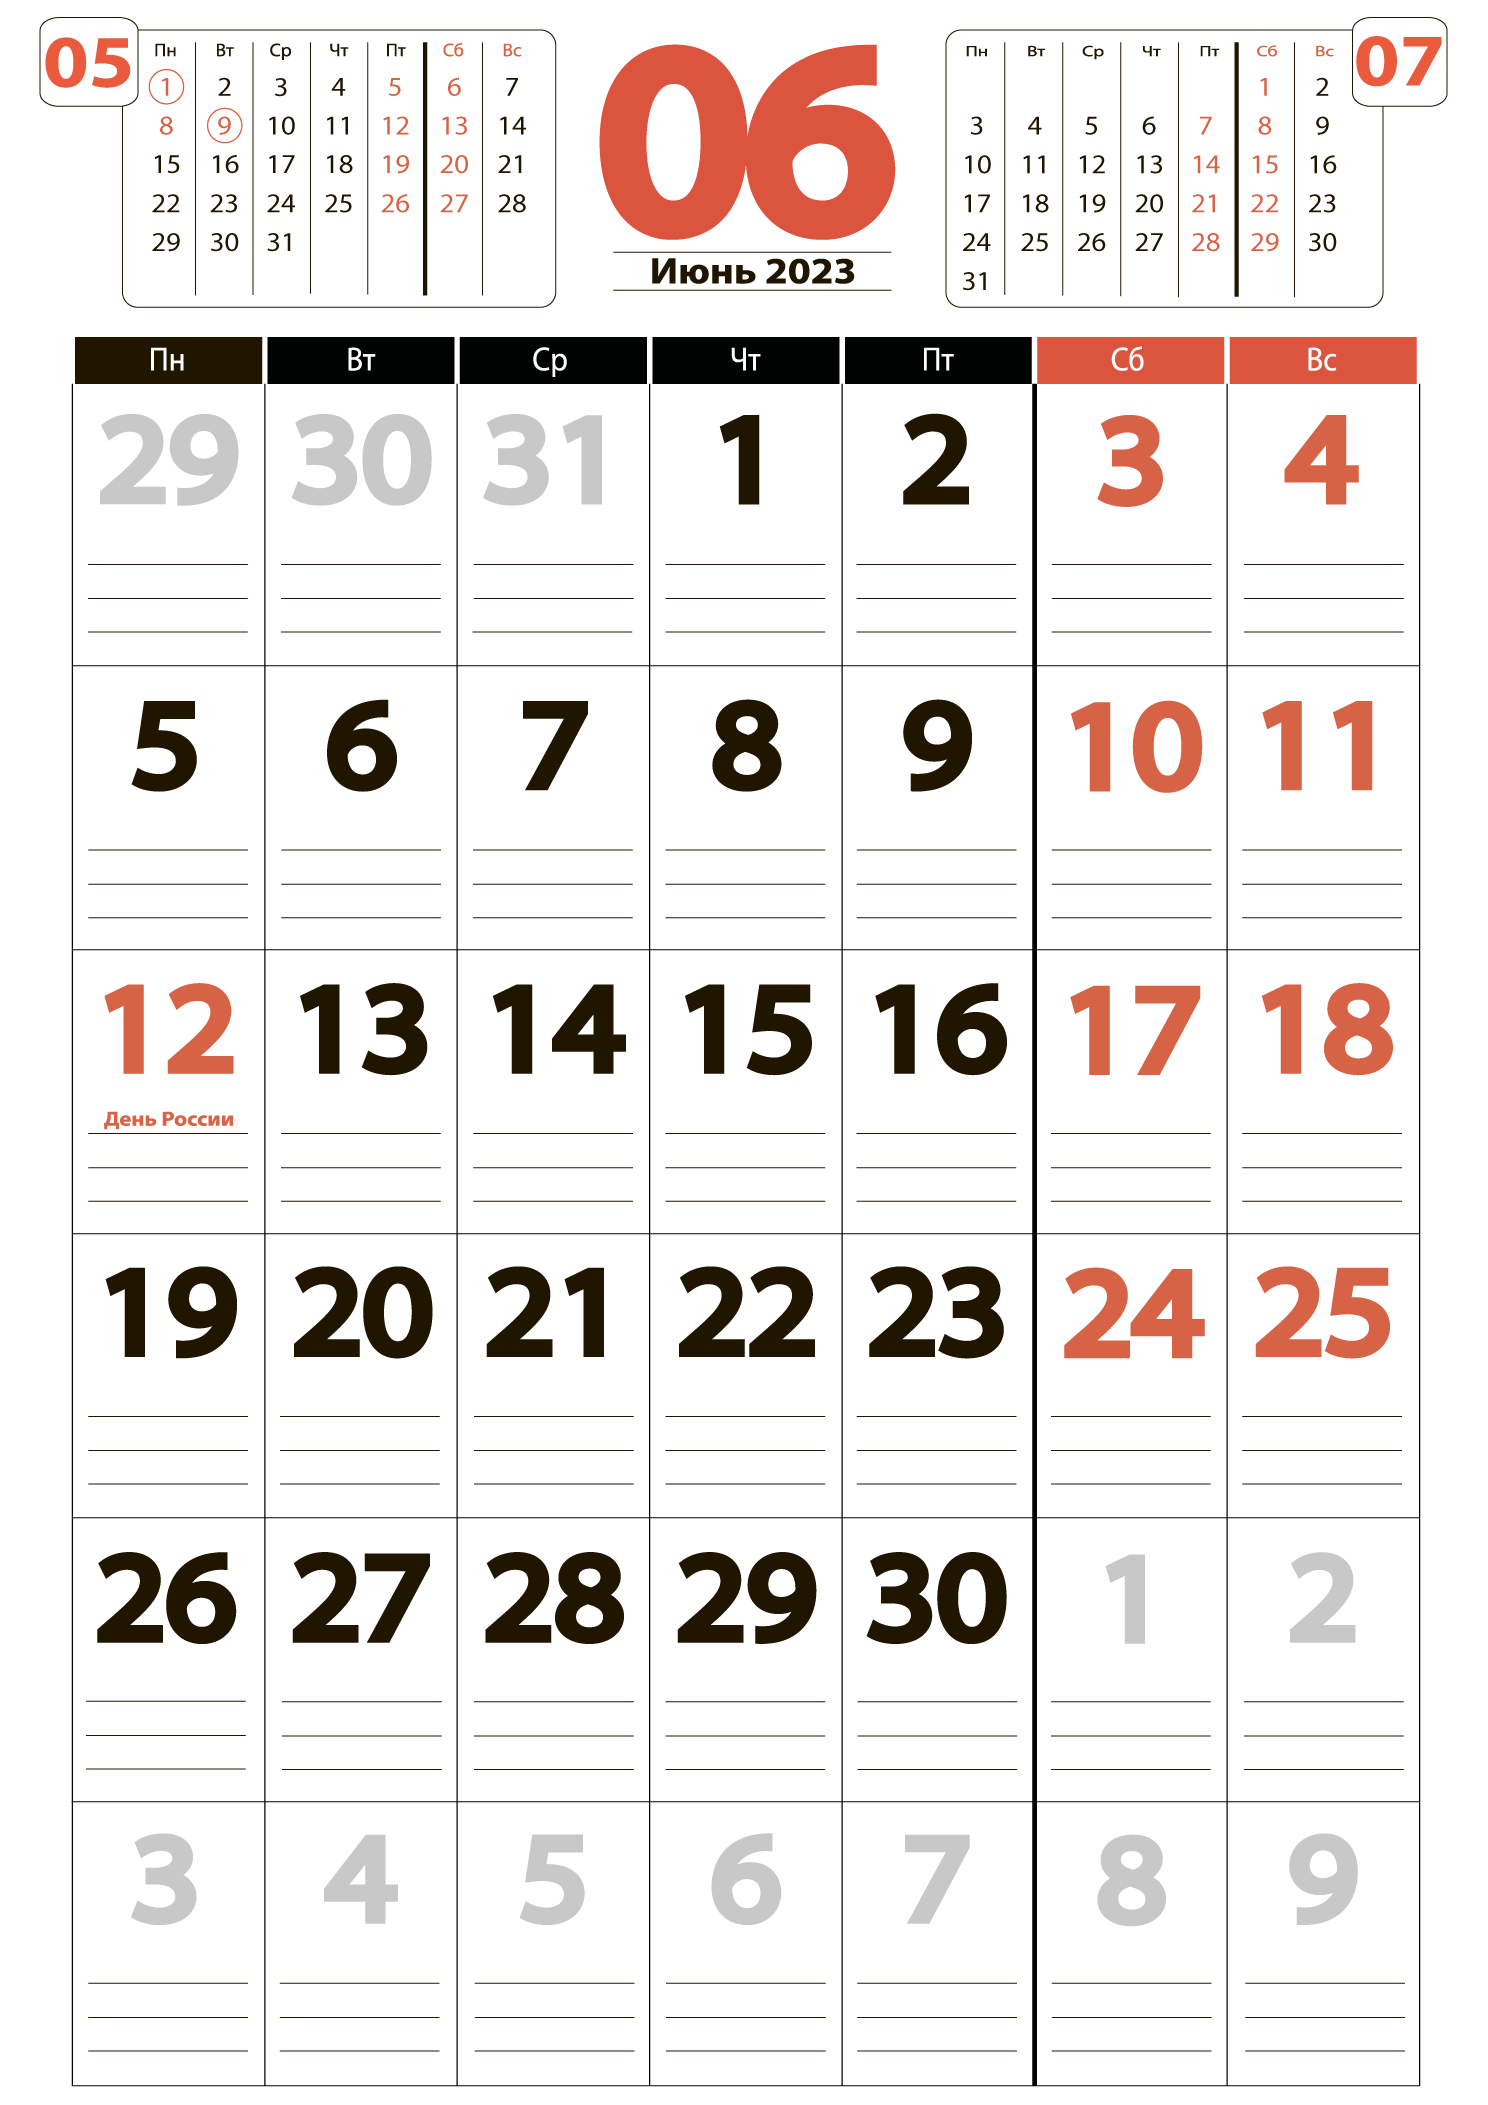 Печать крупного календаря на июнь 2023